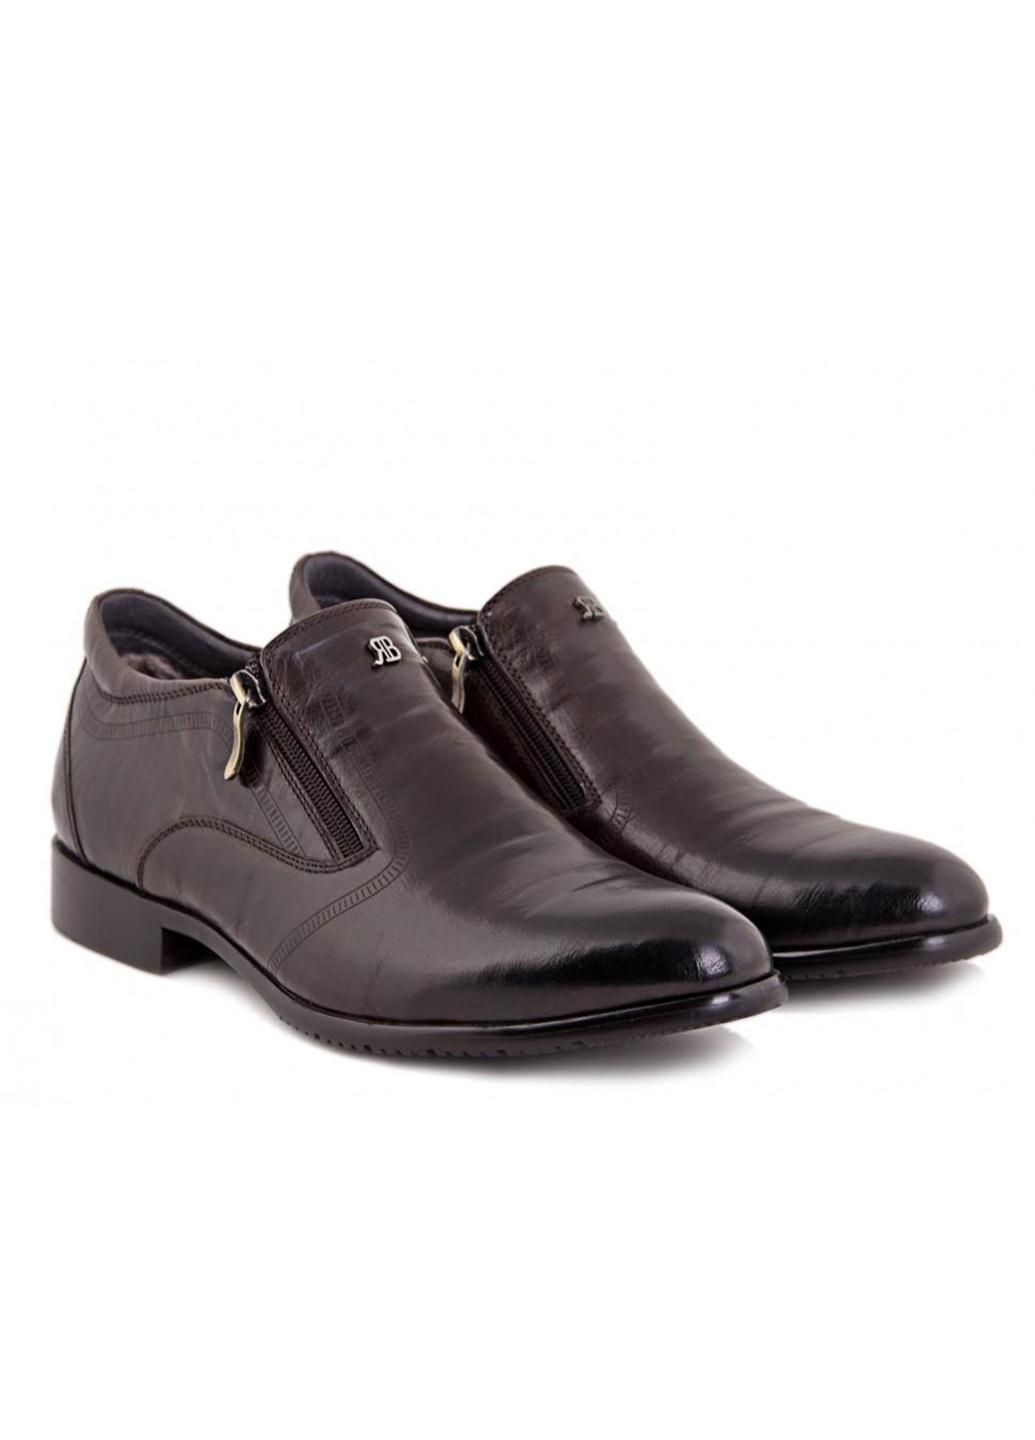 Коричневые зимние ботинки 7154035 цвет коричневый Carlo Delari